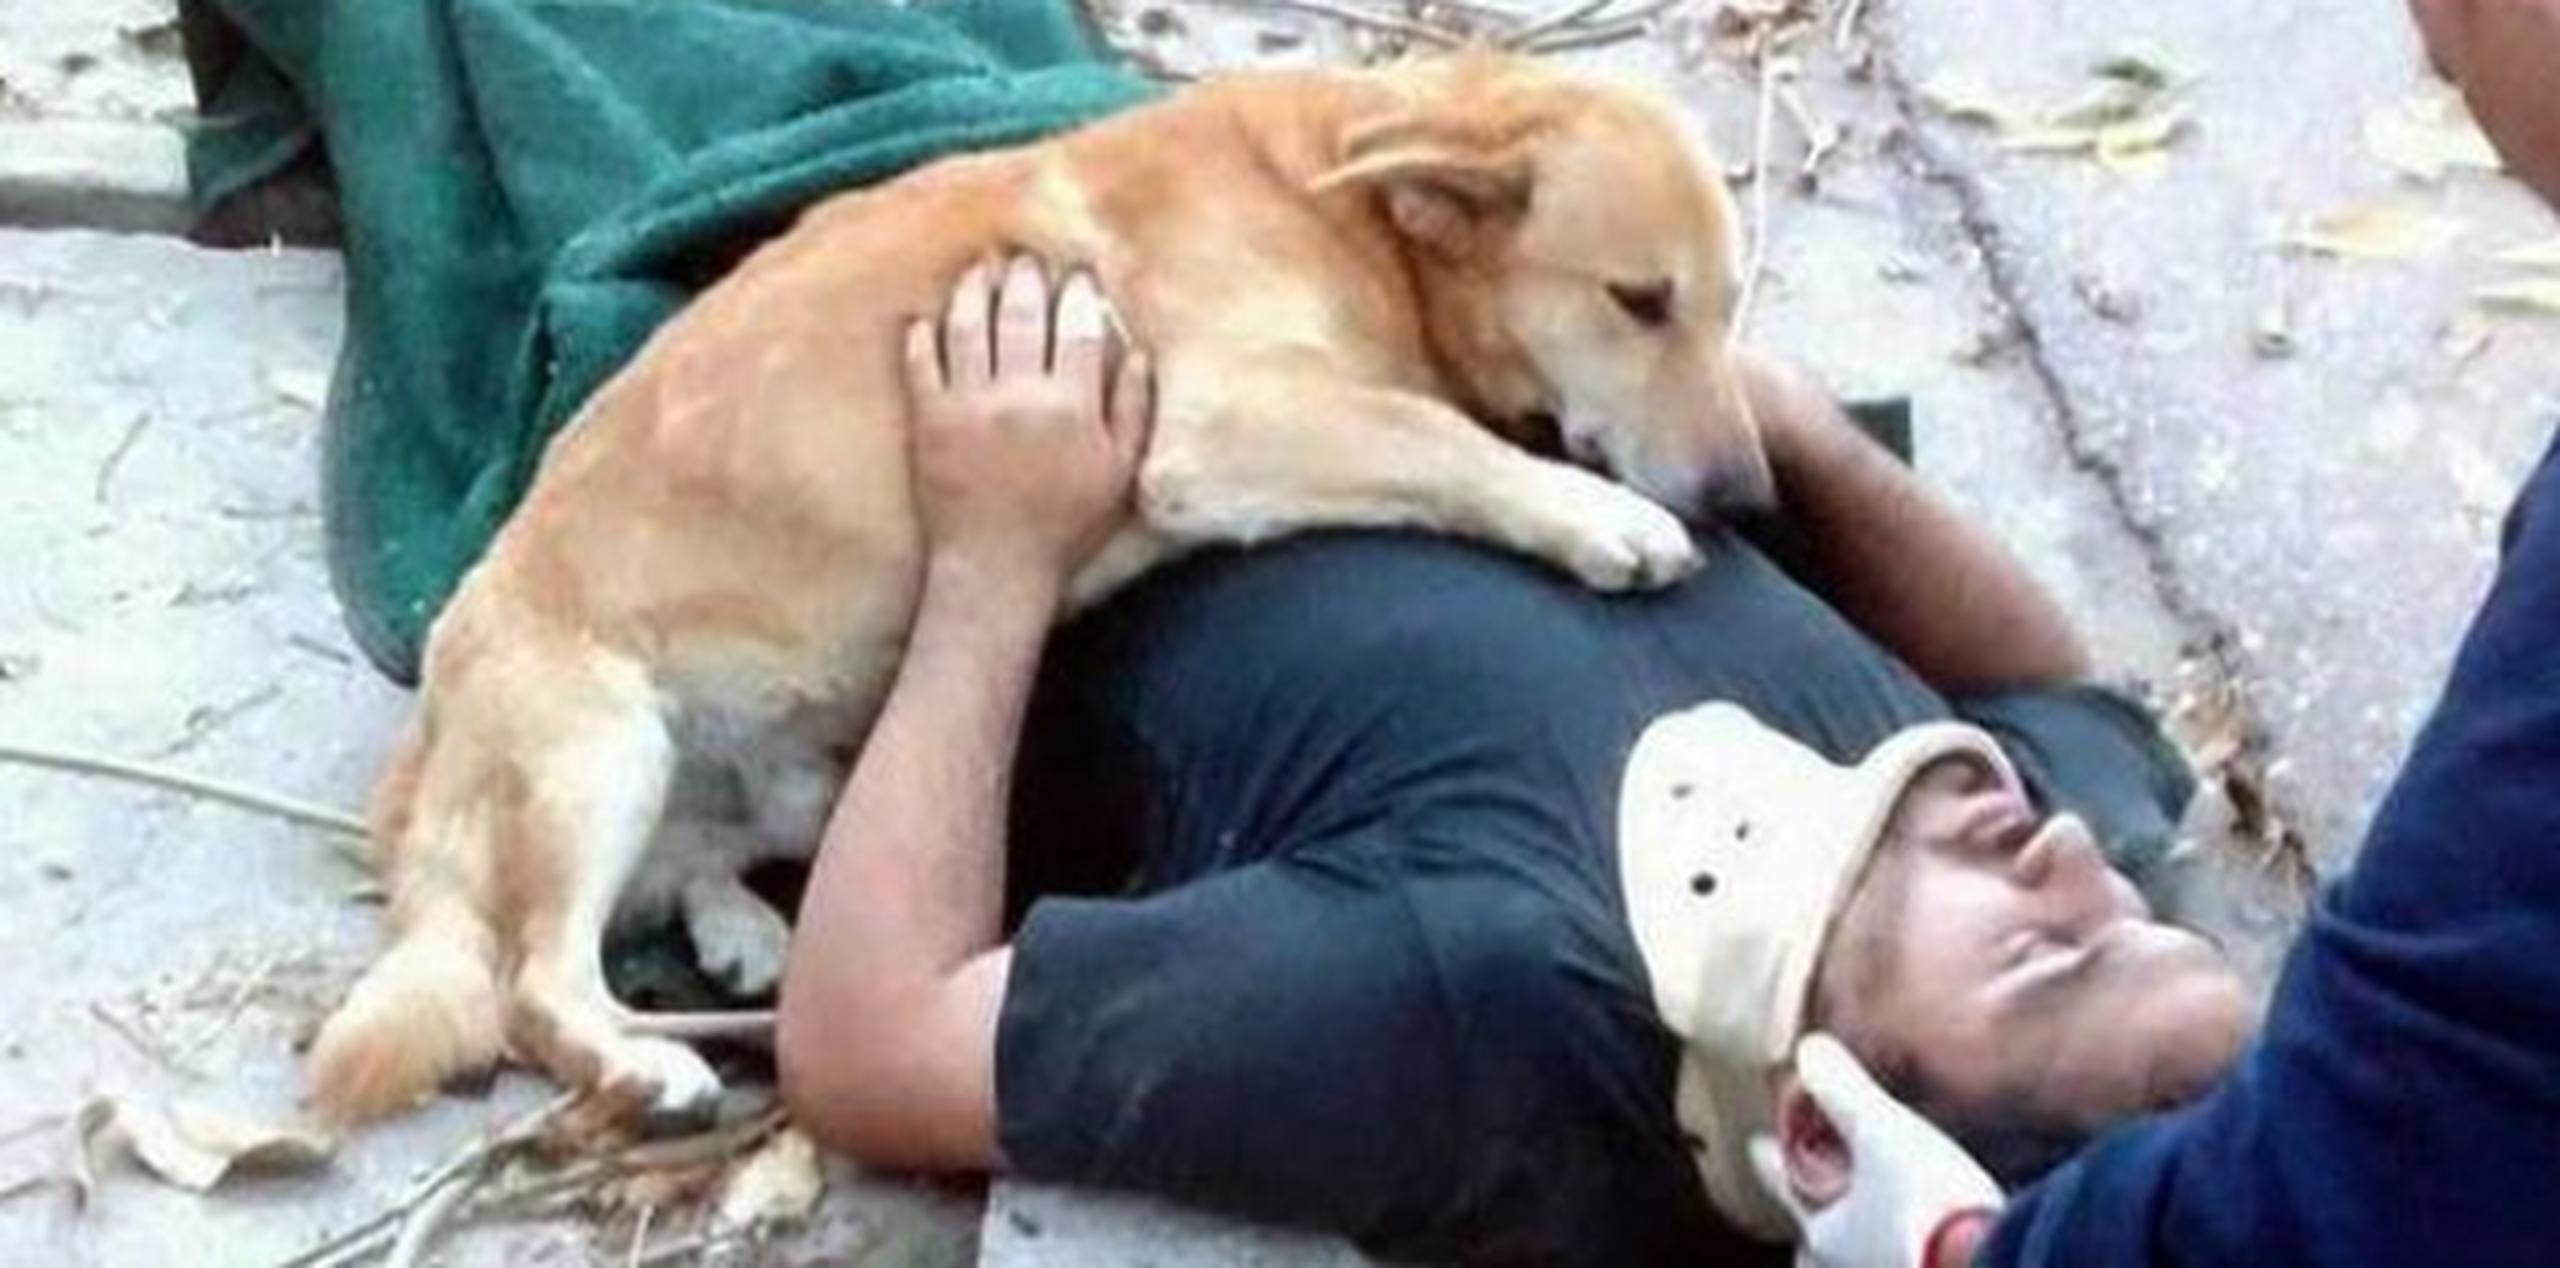 "Un día lo vimos en la calle y lo adoptamos, le dimos amor, alimento y es parte de nuestra familia", aseguró el hombre de su perro. (Defensa Civil de Bahía Blanca)